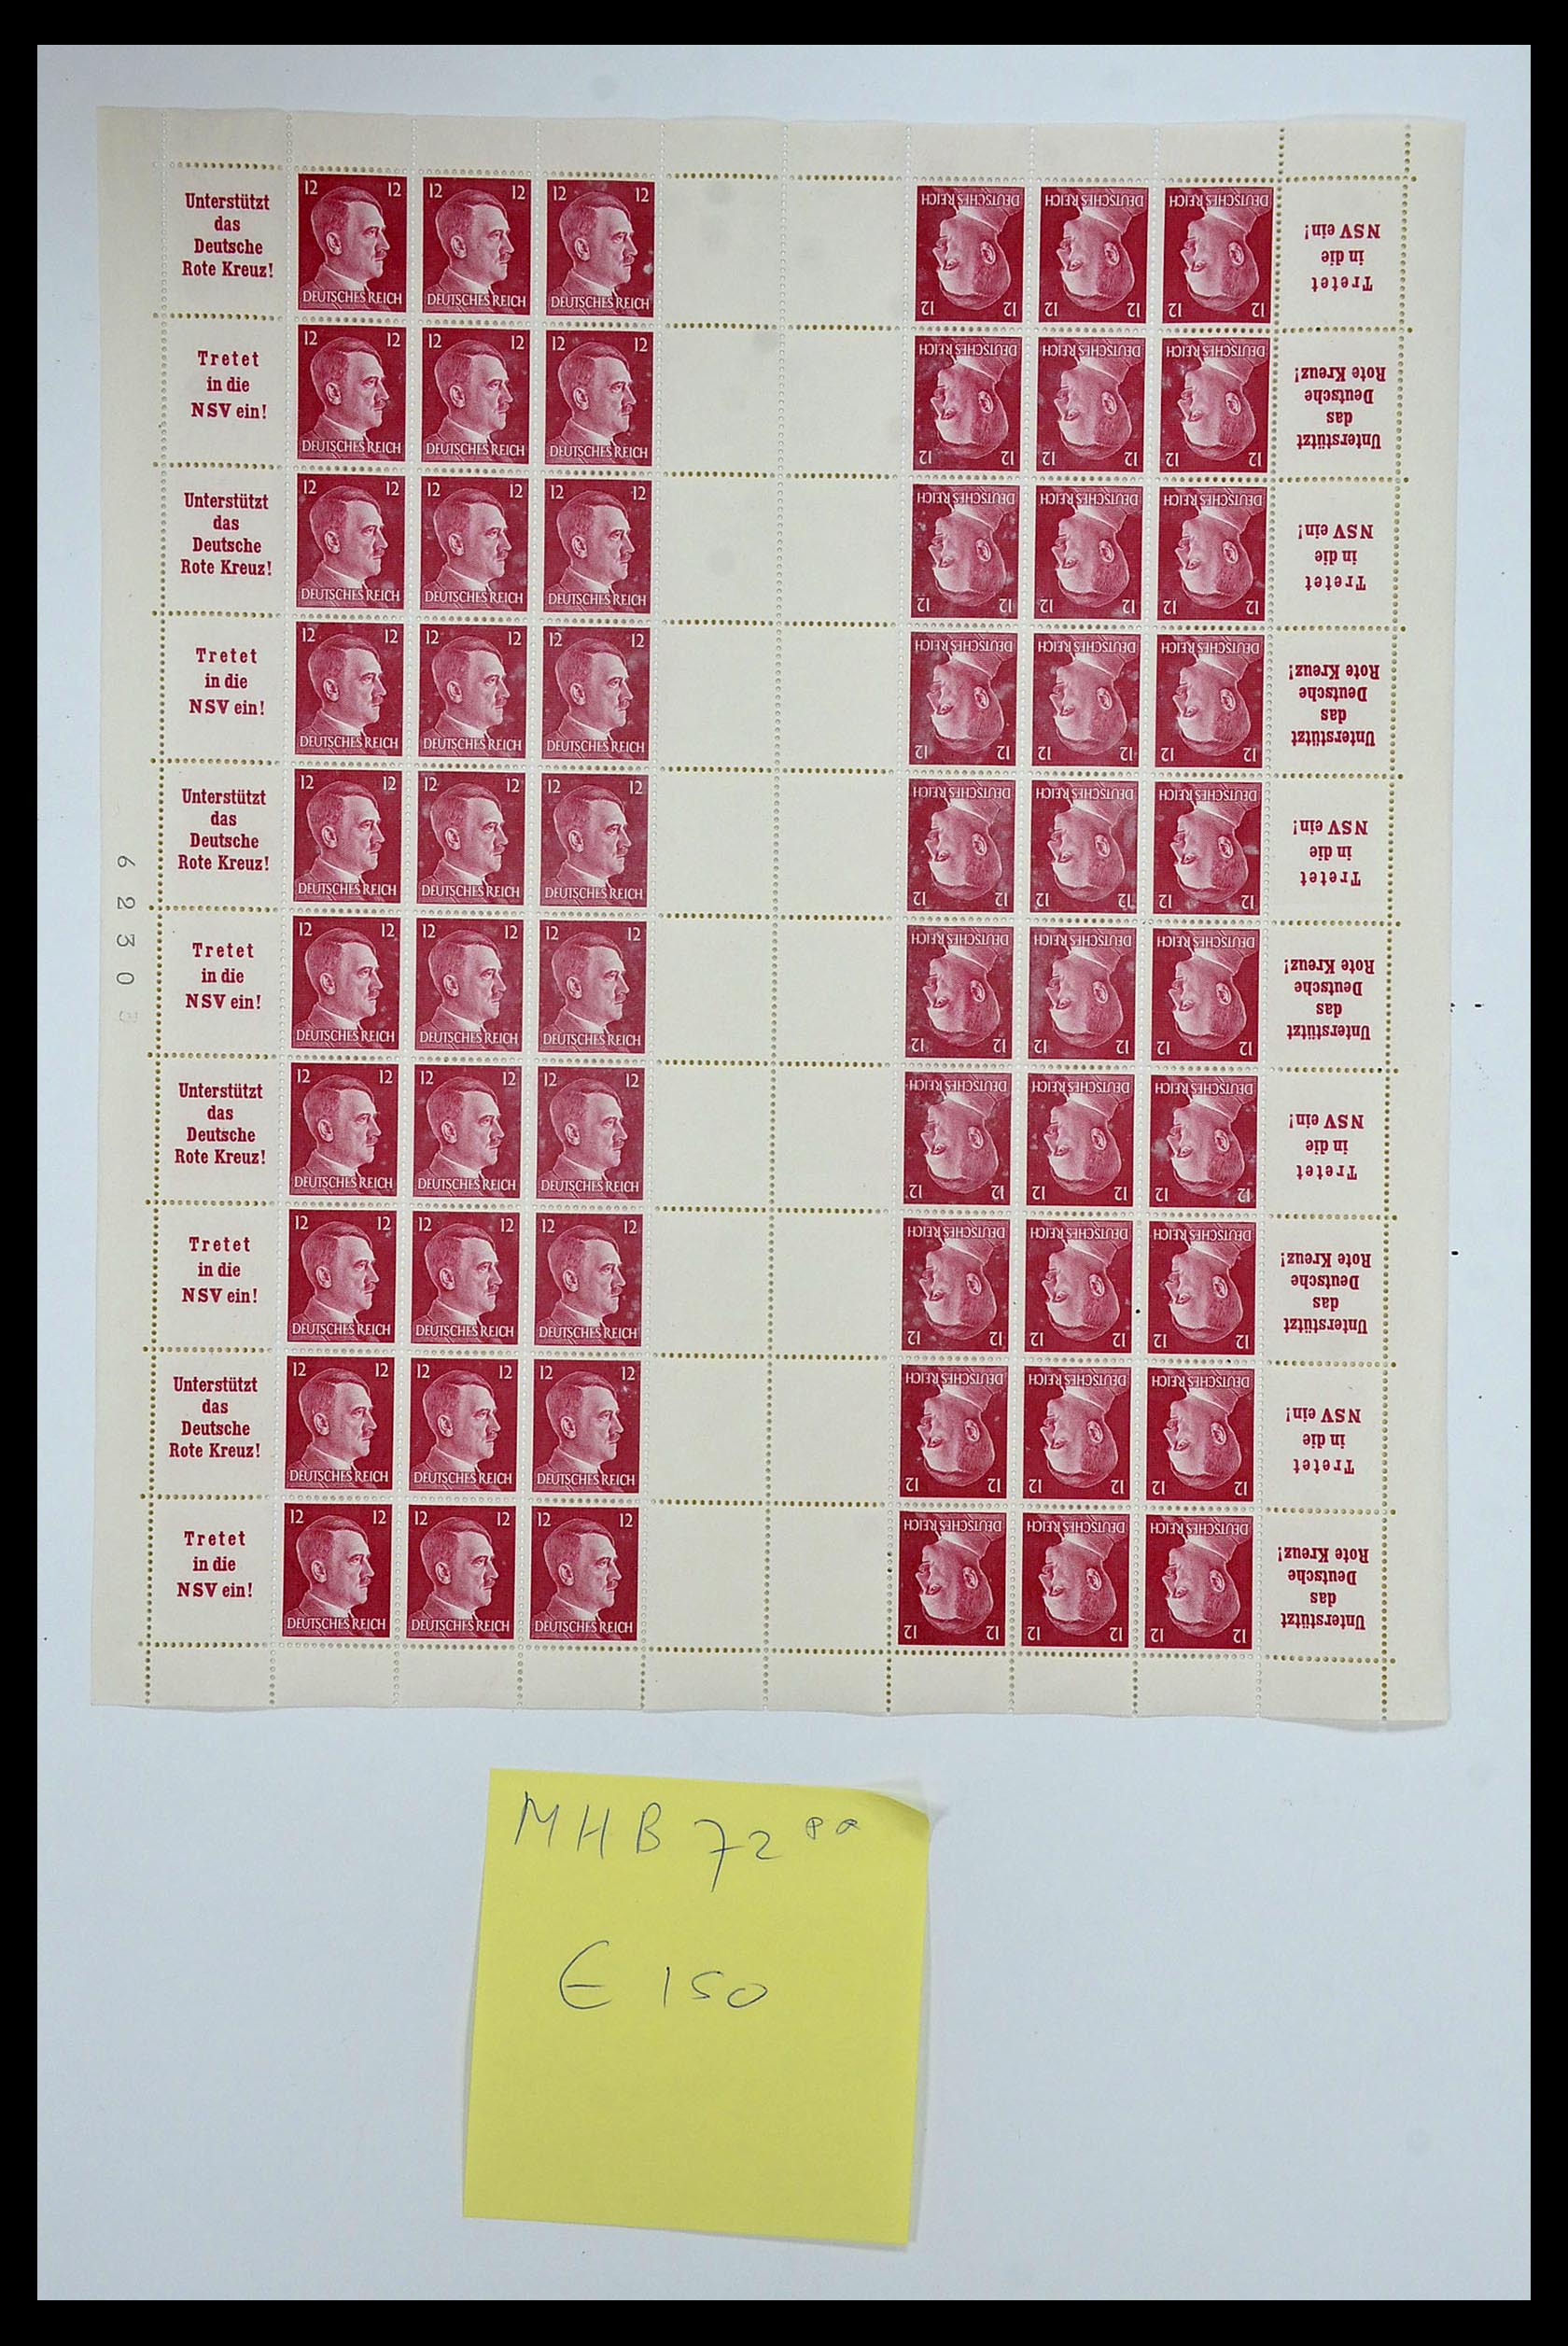 35075 047 - Stamp Collection 35075 German Reich Markenheftchenbogen 1933-1941.